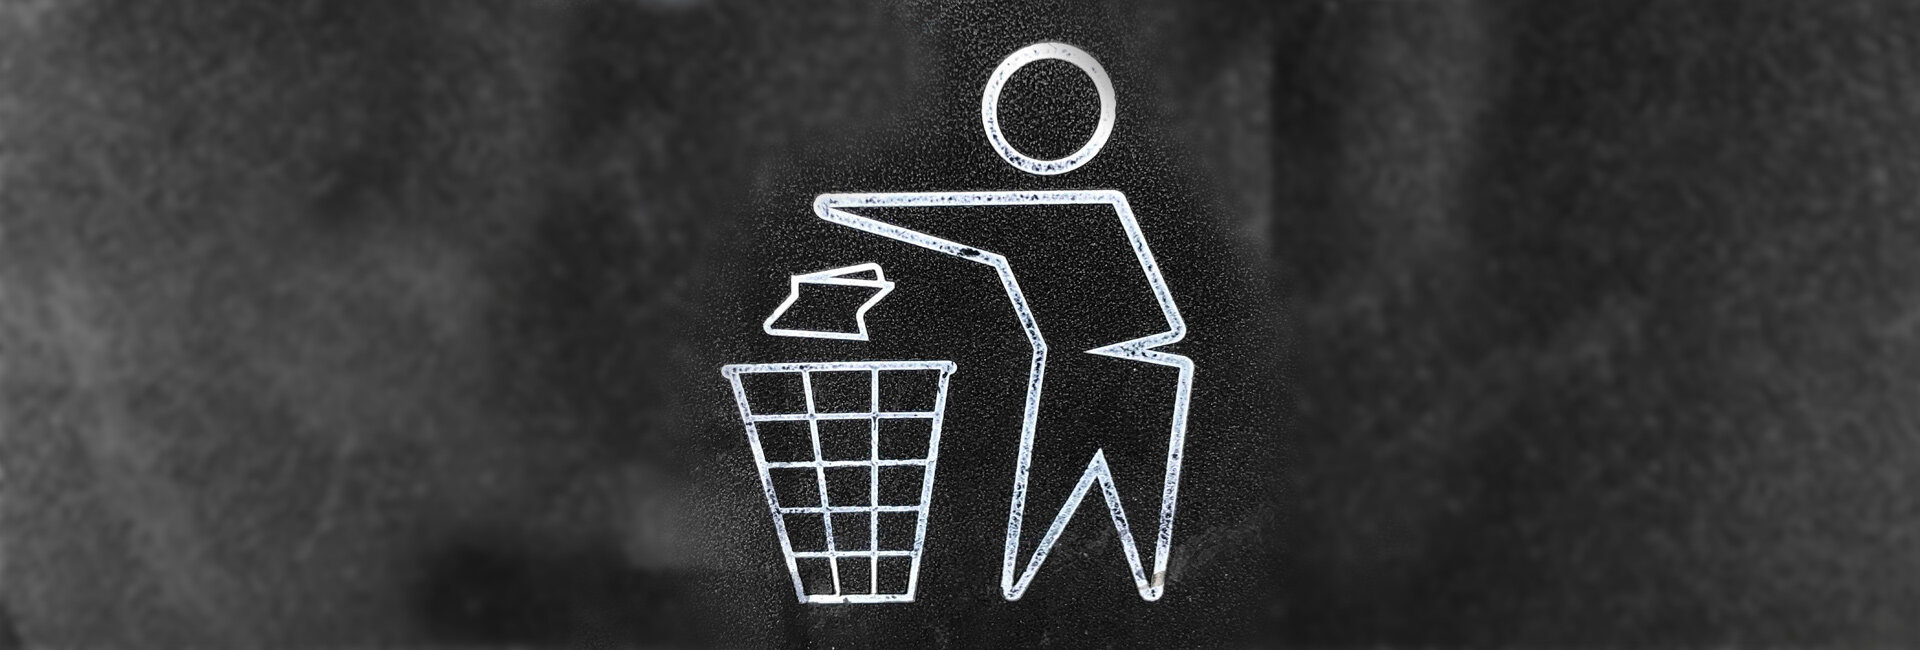 Gestion des déchets - Entretient propreté à Ménétrol (63)